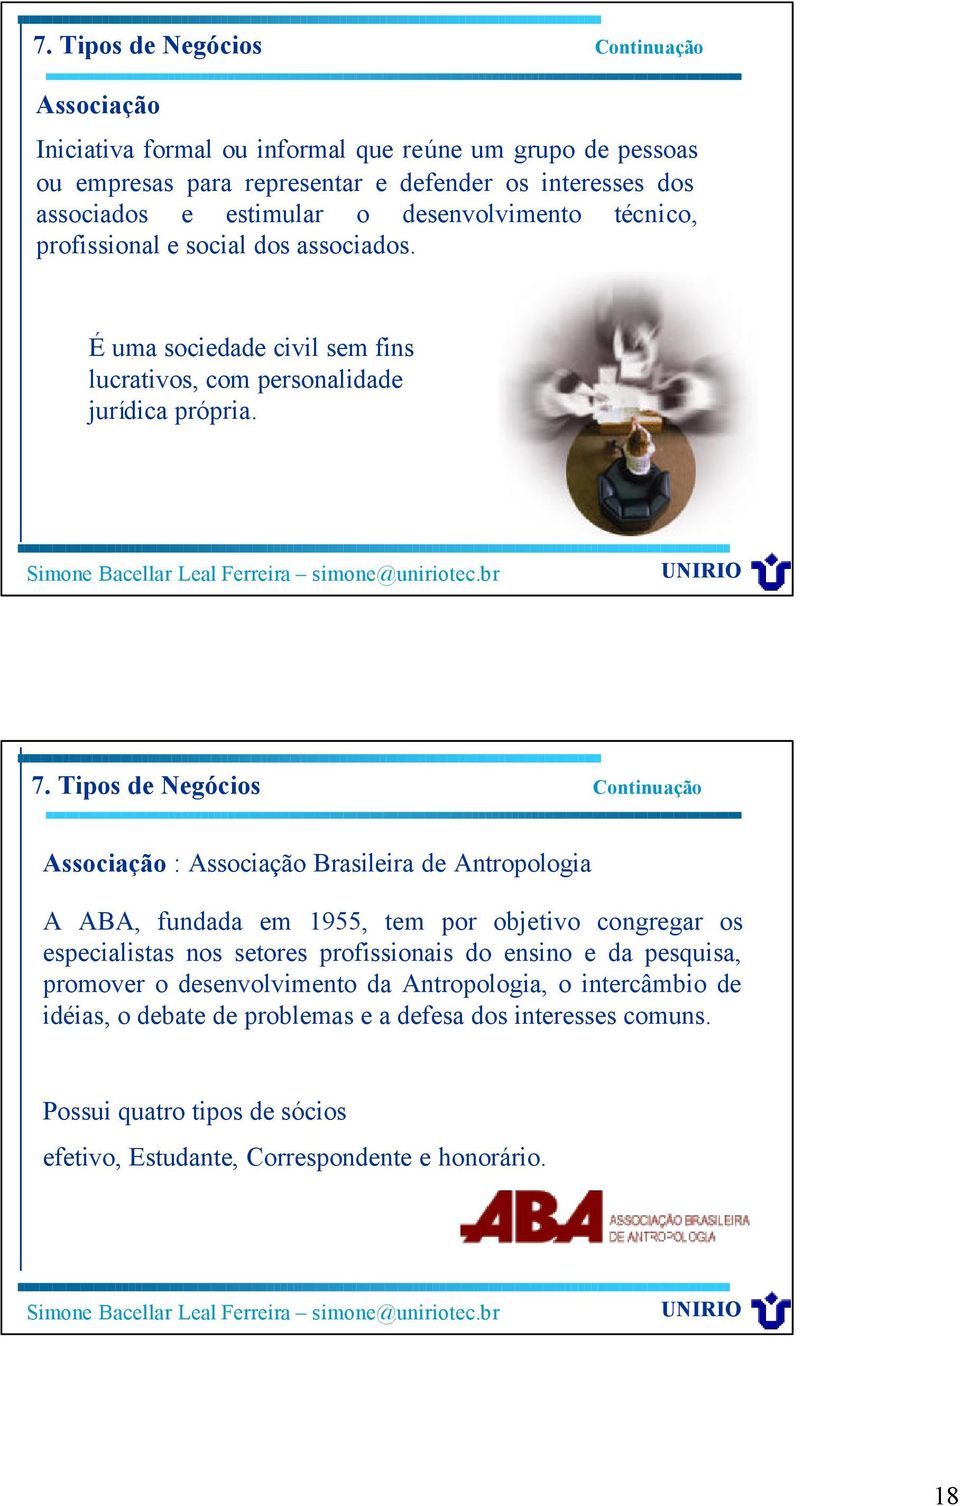 Tipos de Negócios Continuação Associação : Associação Brasileira de Antropologia A ABA, fundada em 1955, tem por objetivo congregar os especialistas nos setores profissionais do ensino